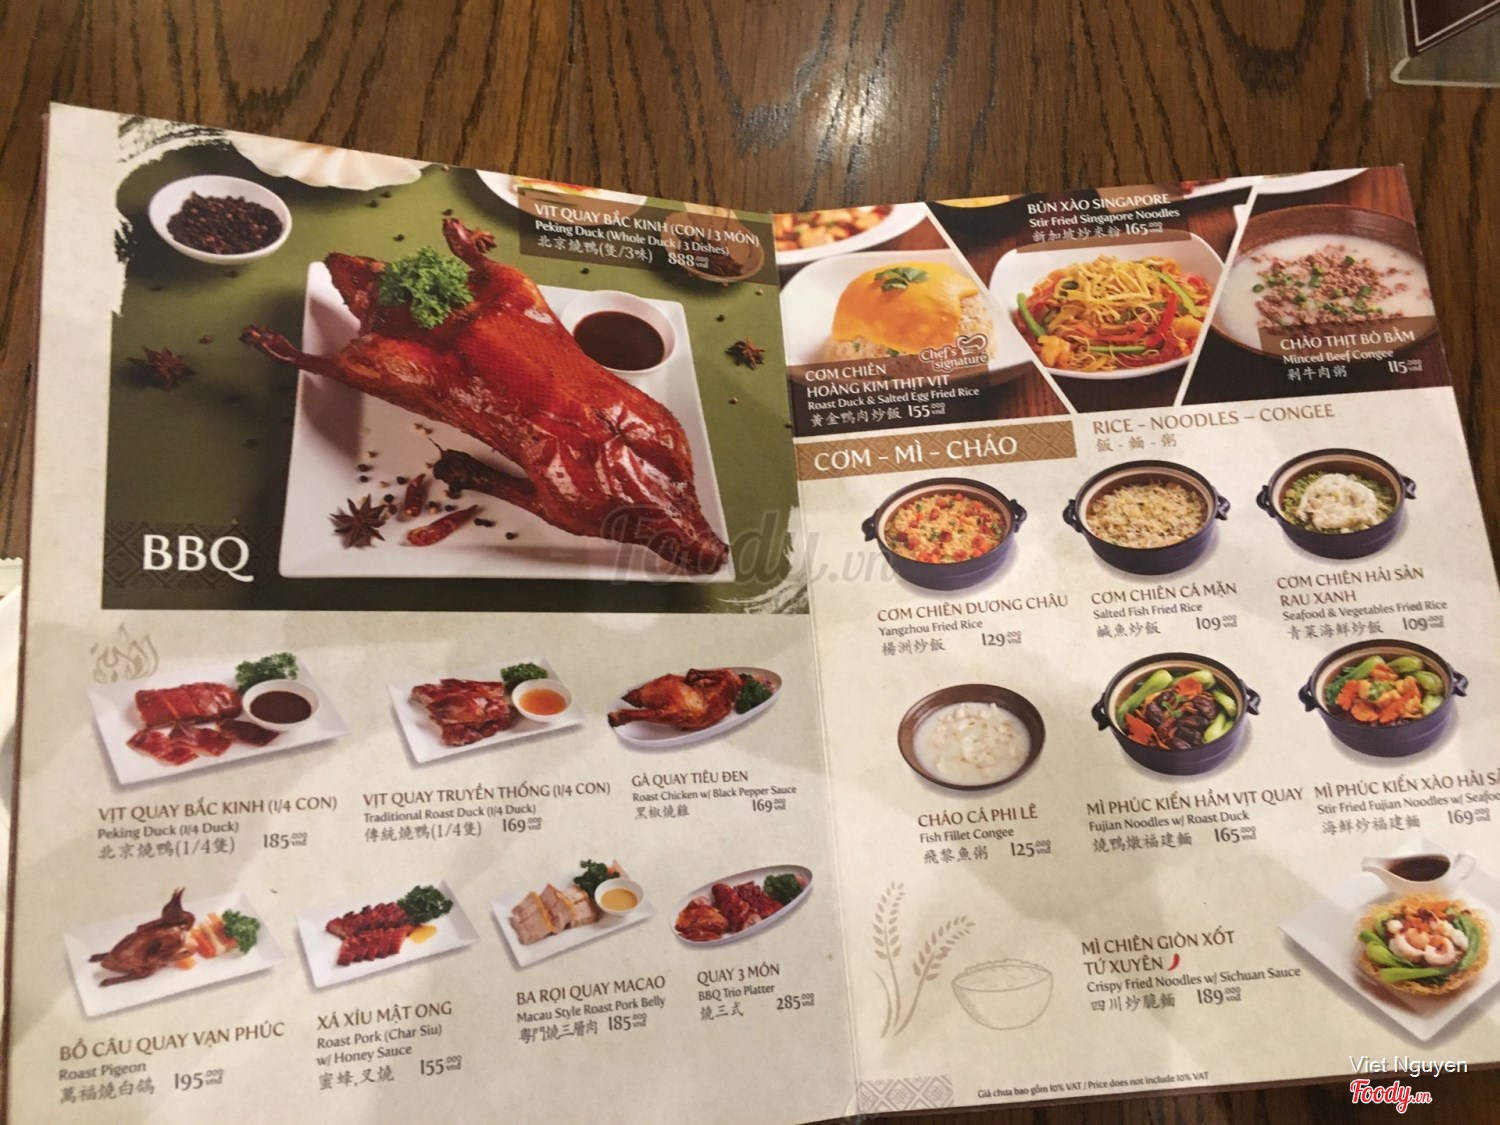 C.TAO - Chinese Restaurant ở Quận 1, TP. HCM | Menu Thực đơn & Giá cả